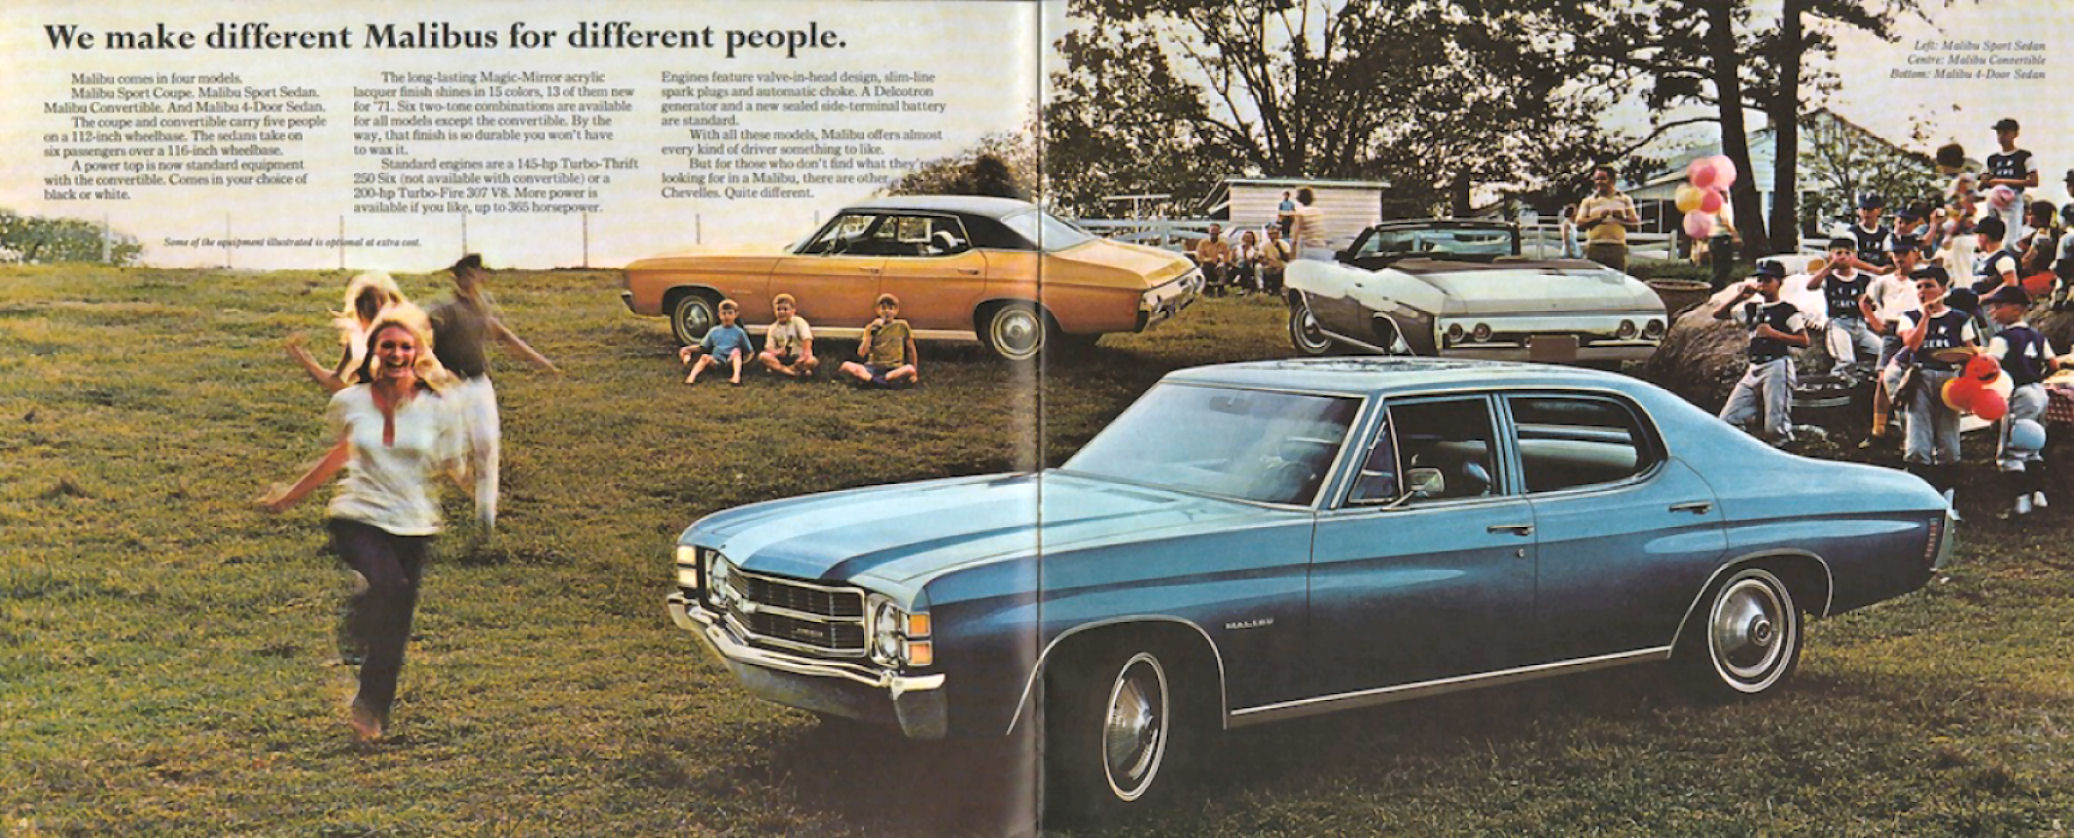 1971_Chevrolet_Chevelle_Cdn-04-05